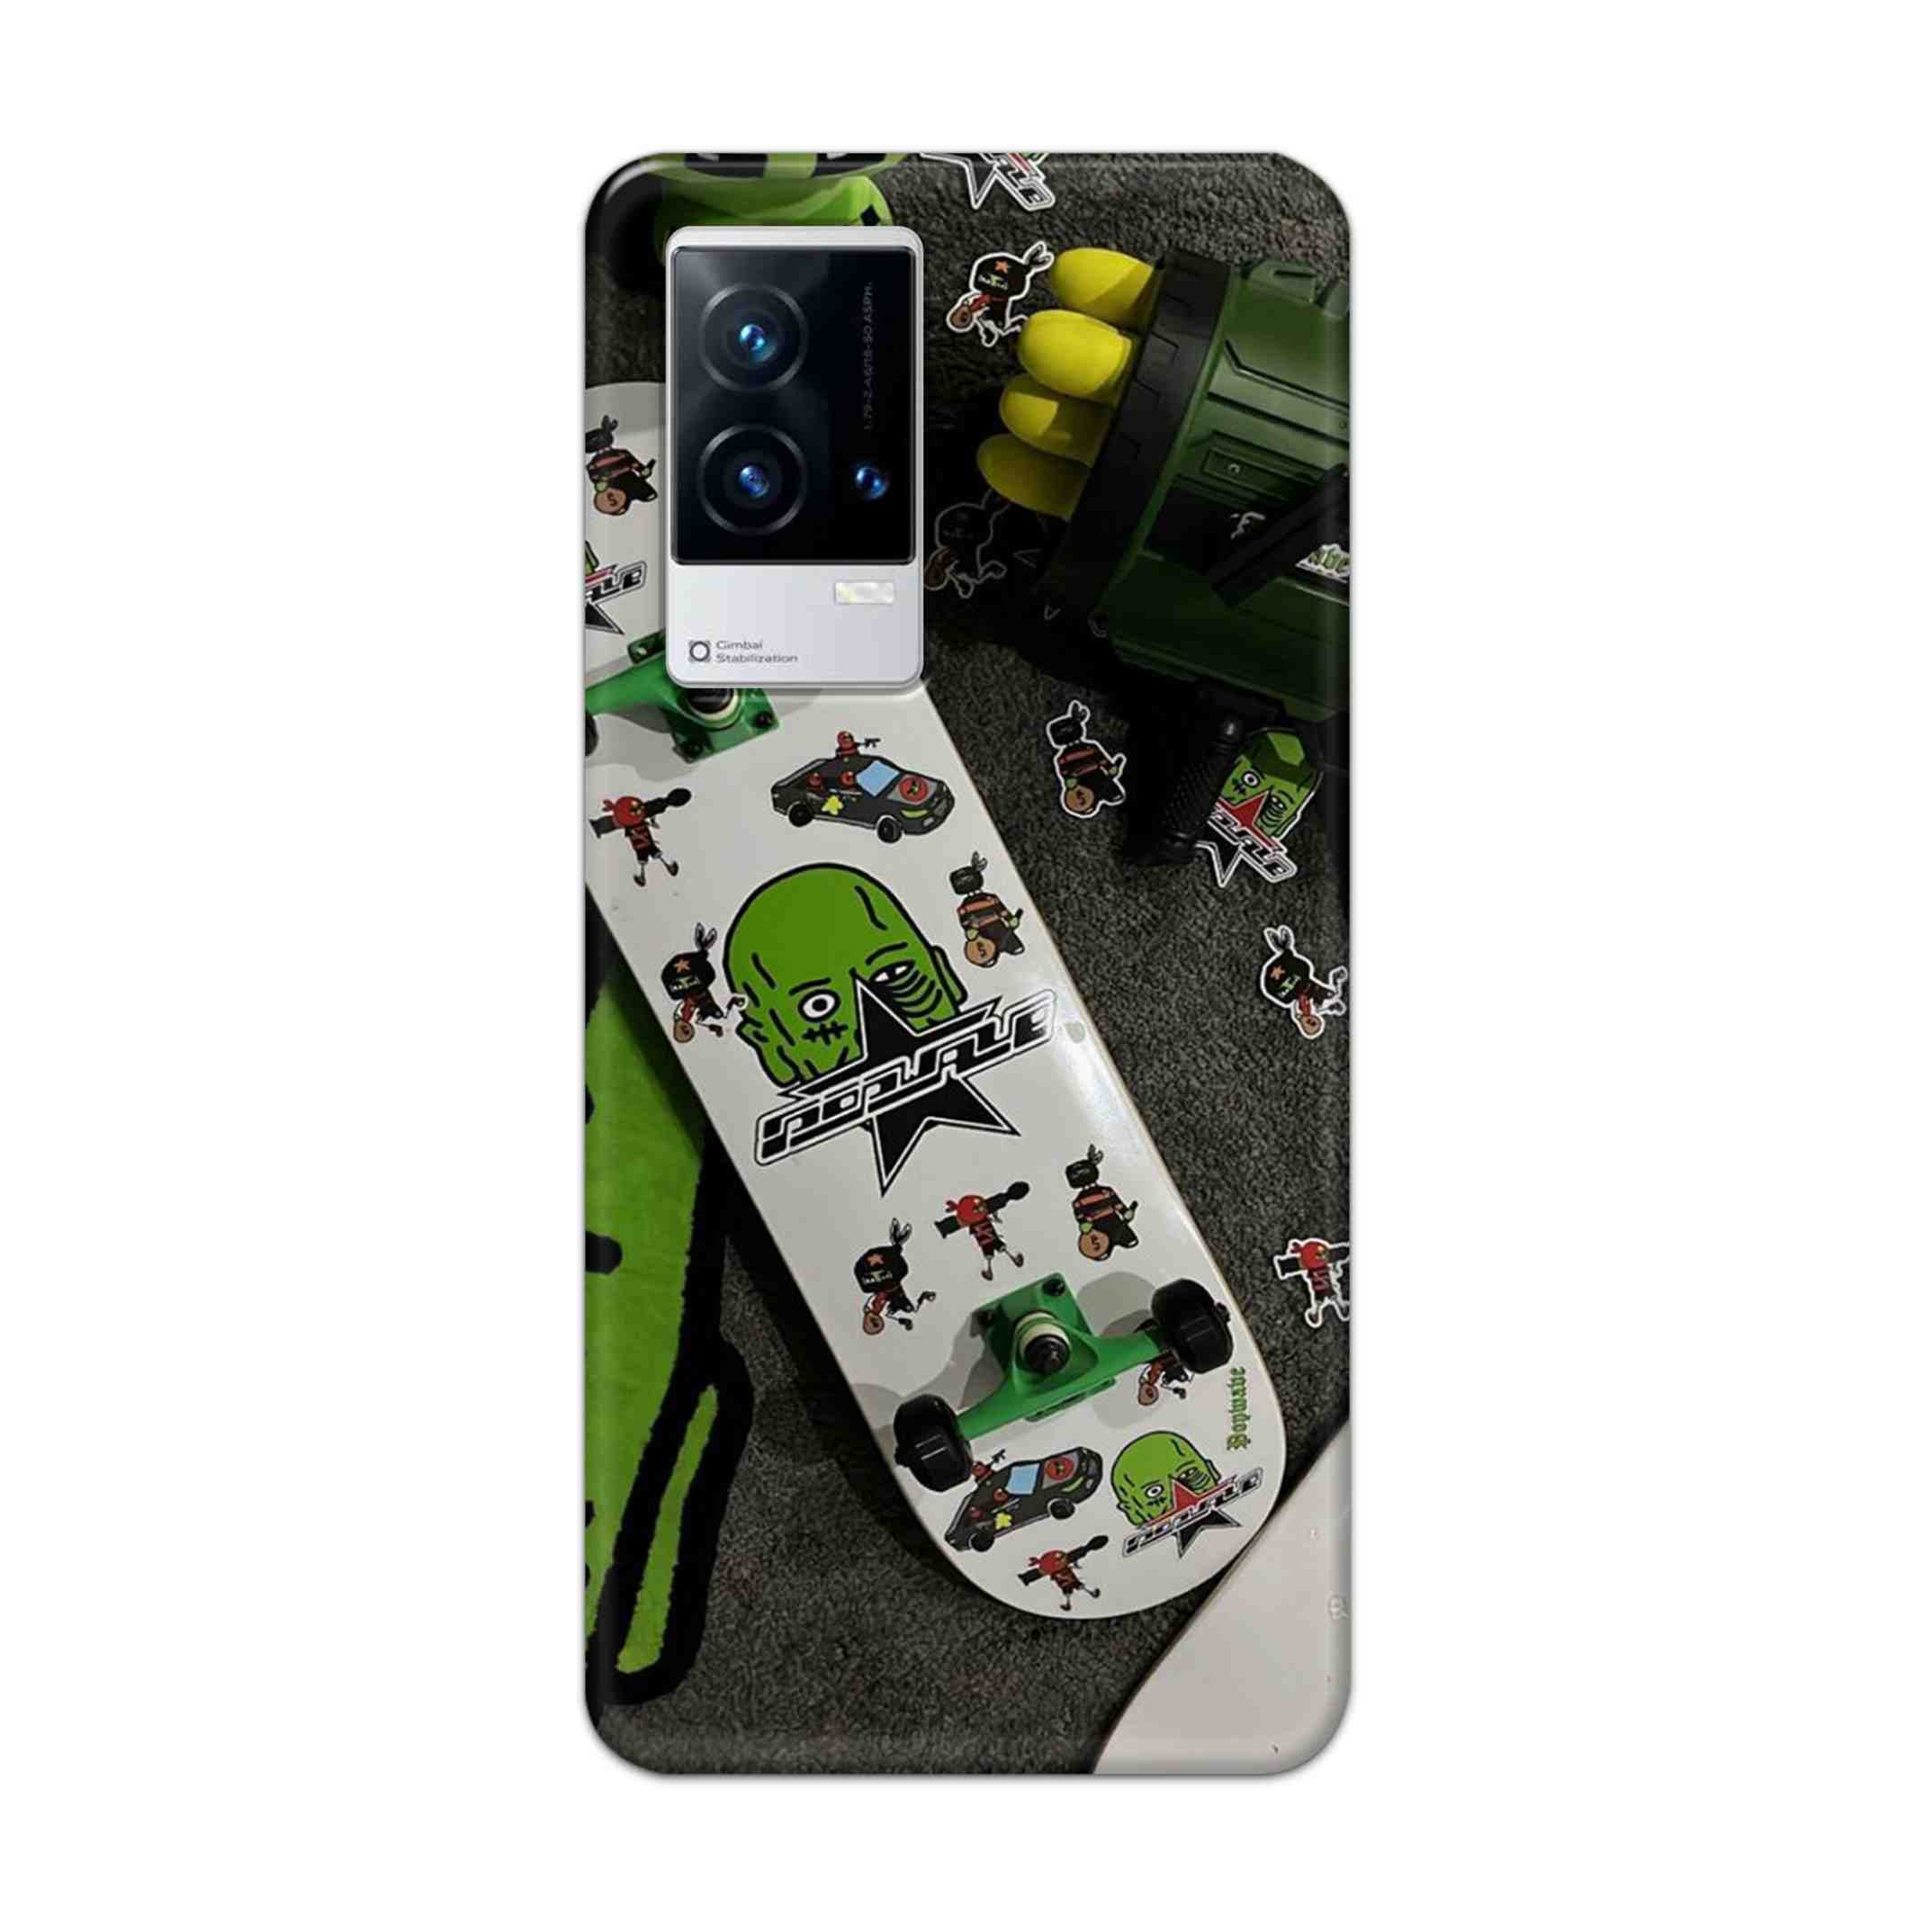 Buy Hulk Skateboard Hard Back Mobile Phone Case Cover For Vivo iQOO 9 5G Online